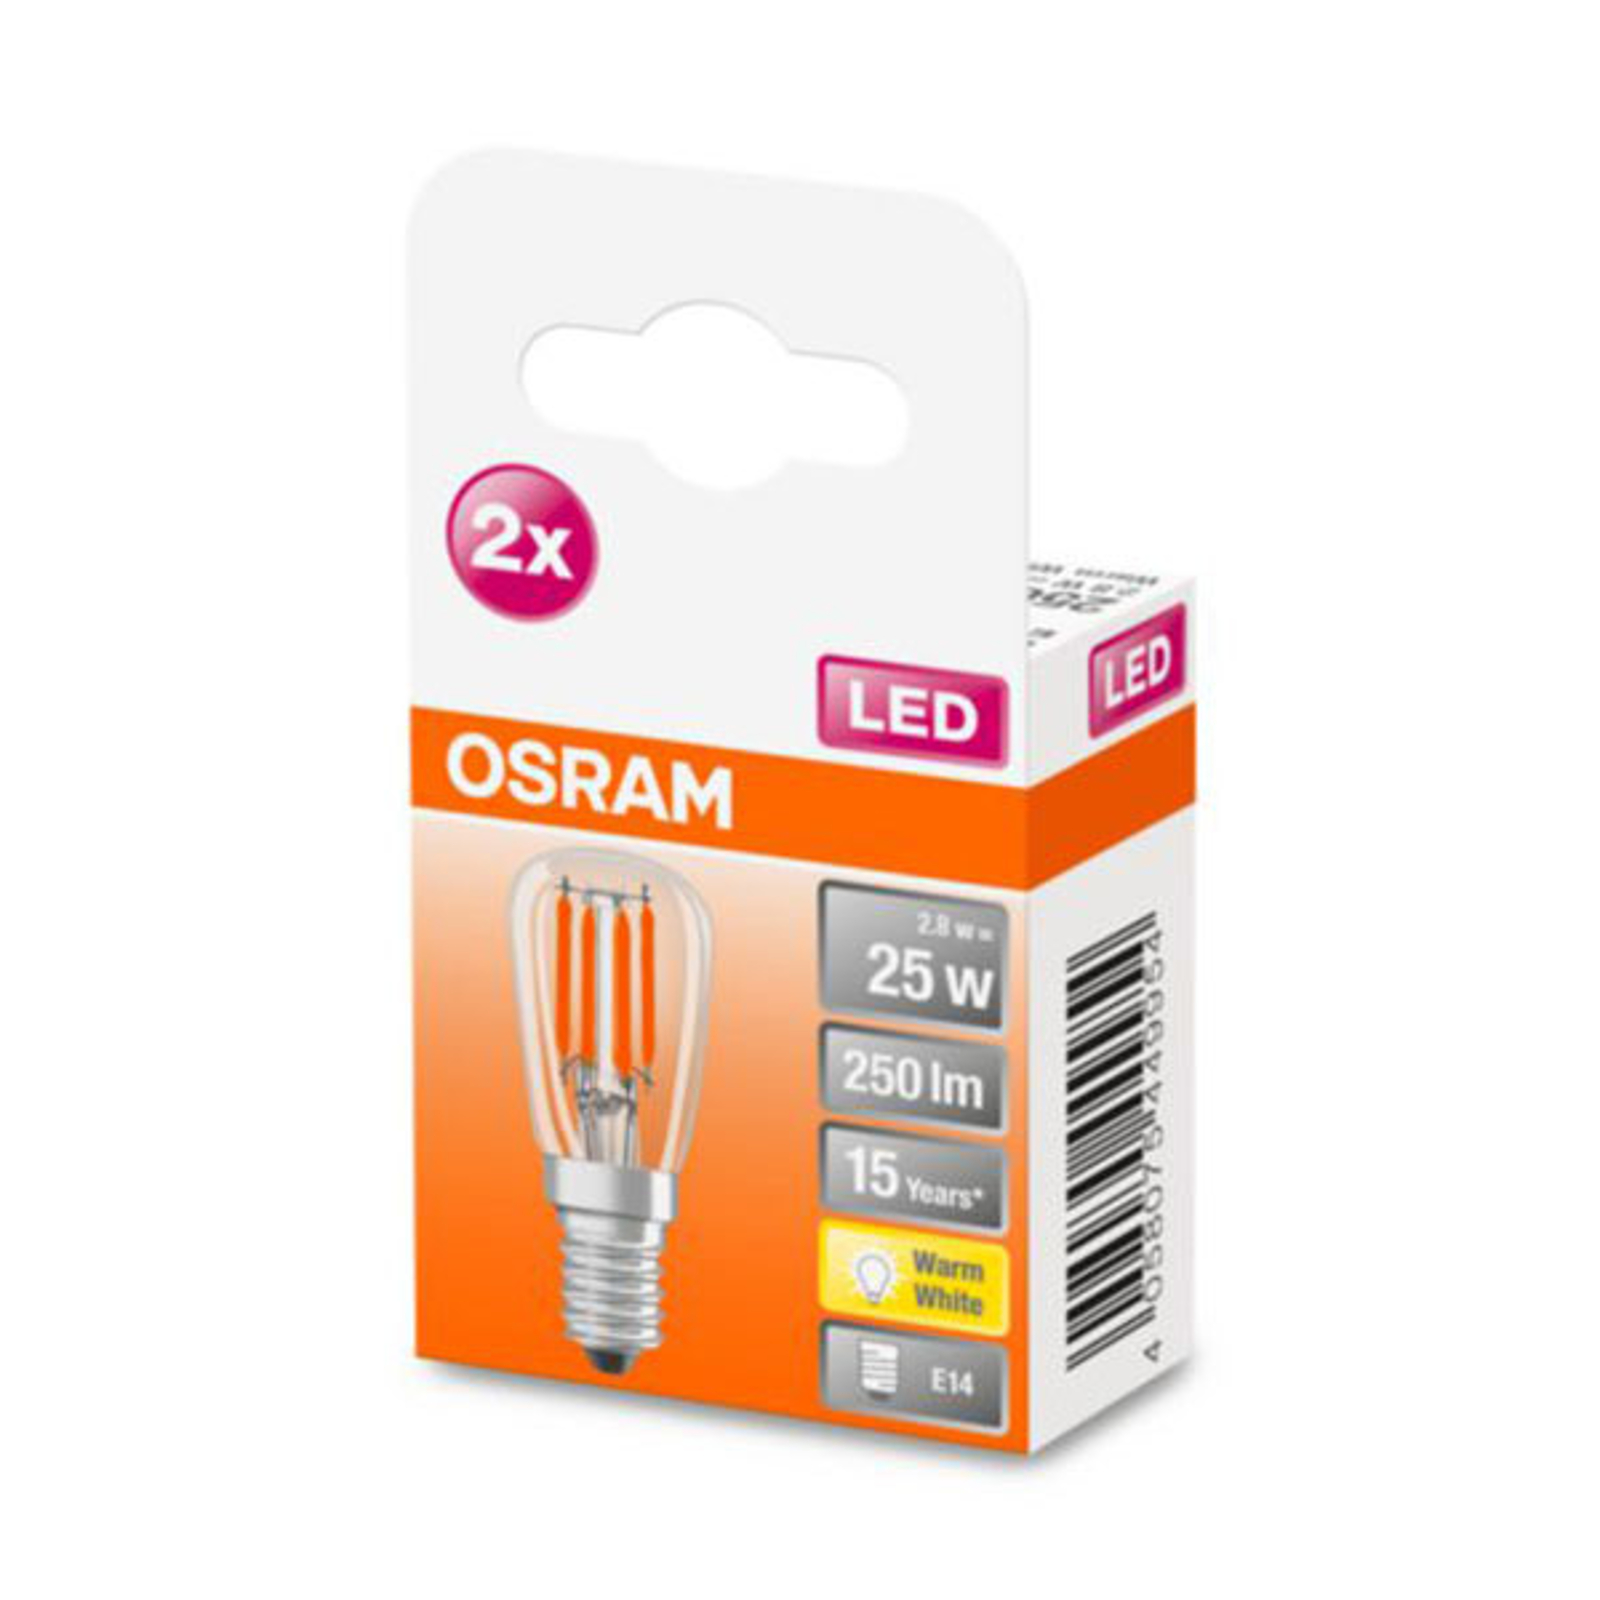 OSRAM-LED-lamppu E14 T26 2,8W 2700K kirkas 2 kpl